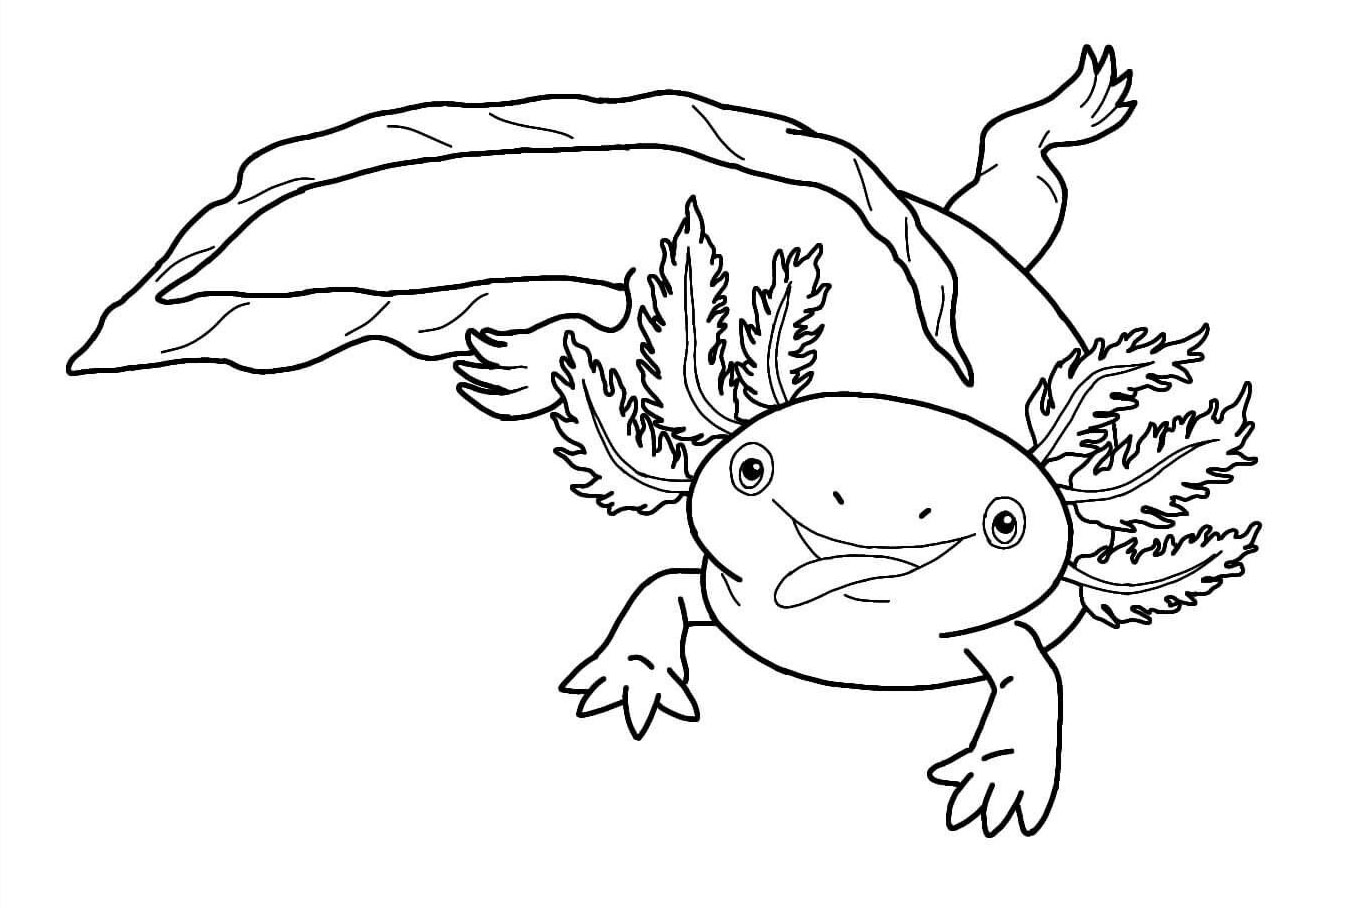 Axolotl 10